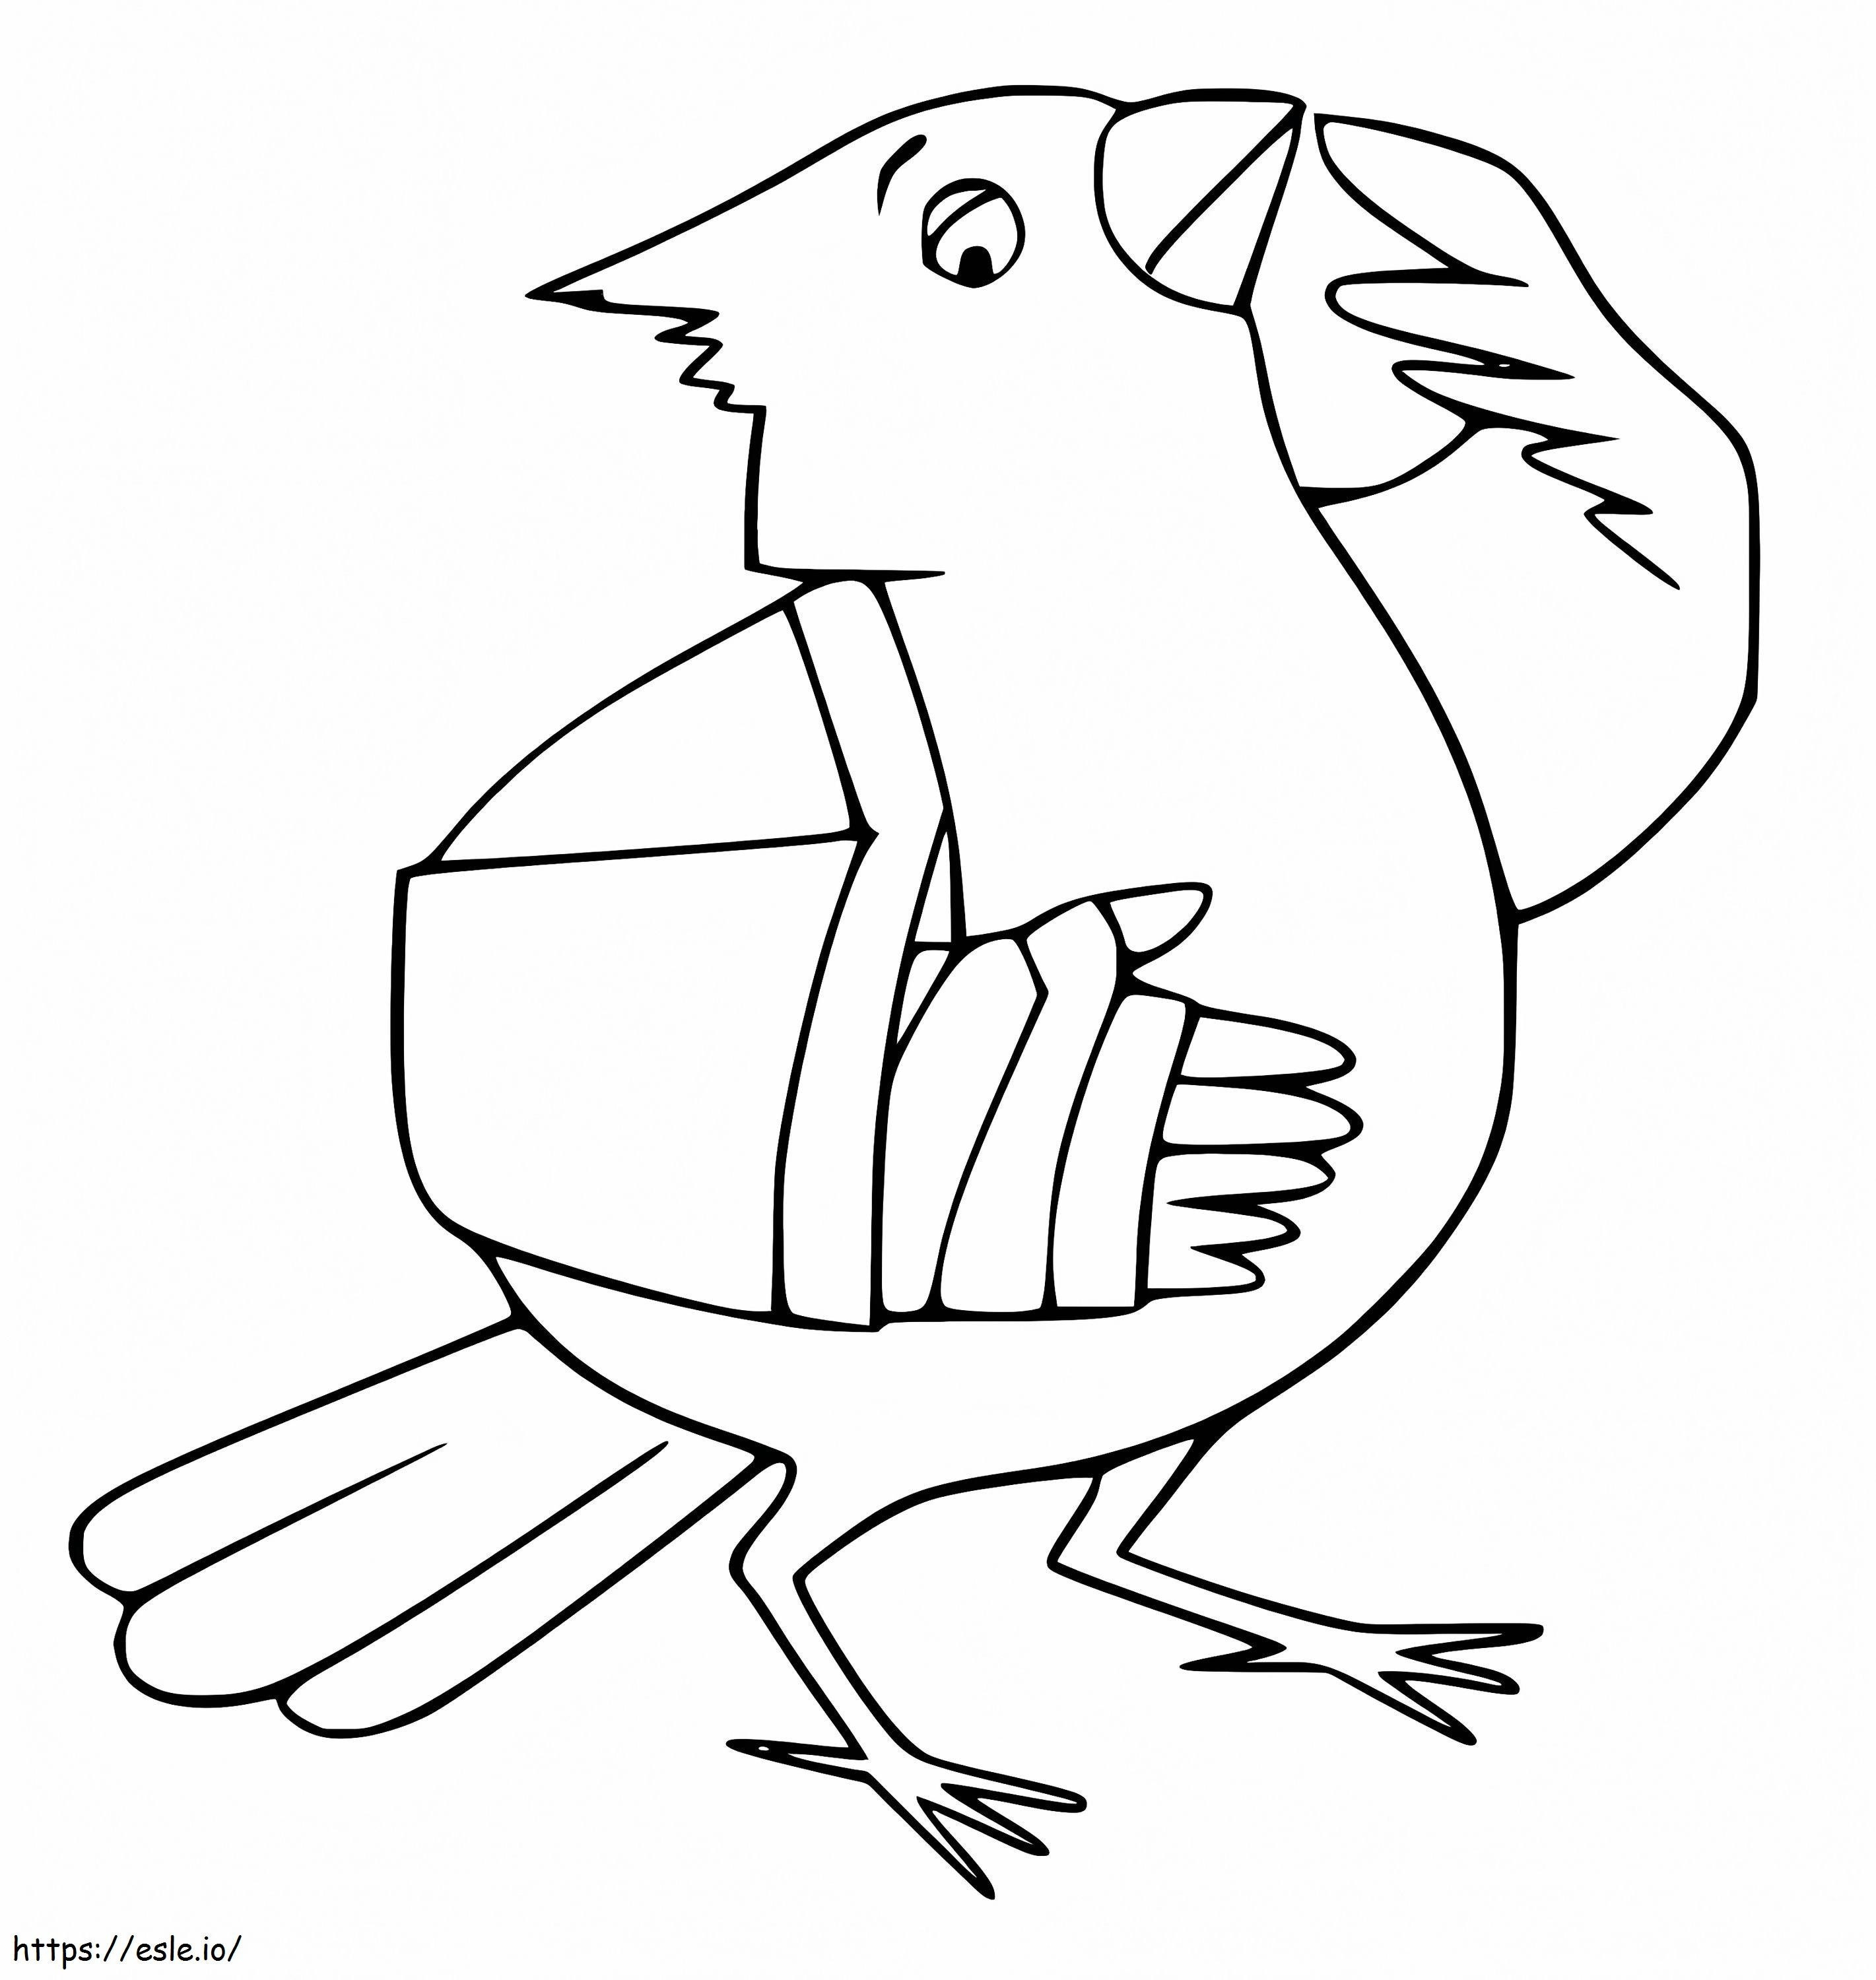 Cardinal de desene animate de colorat